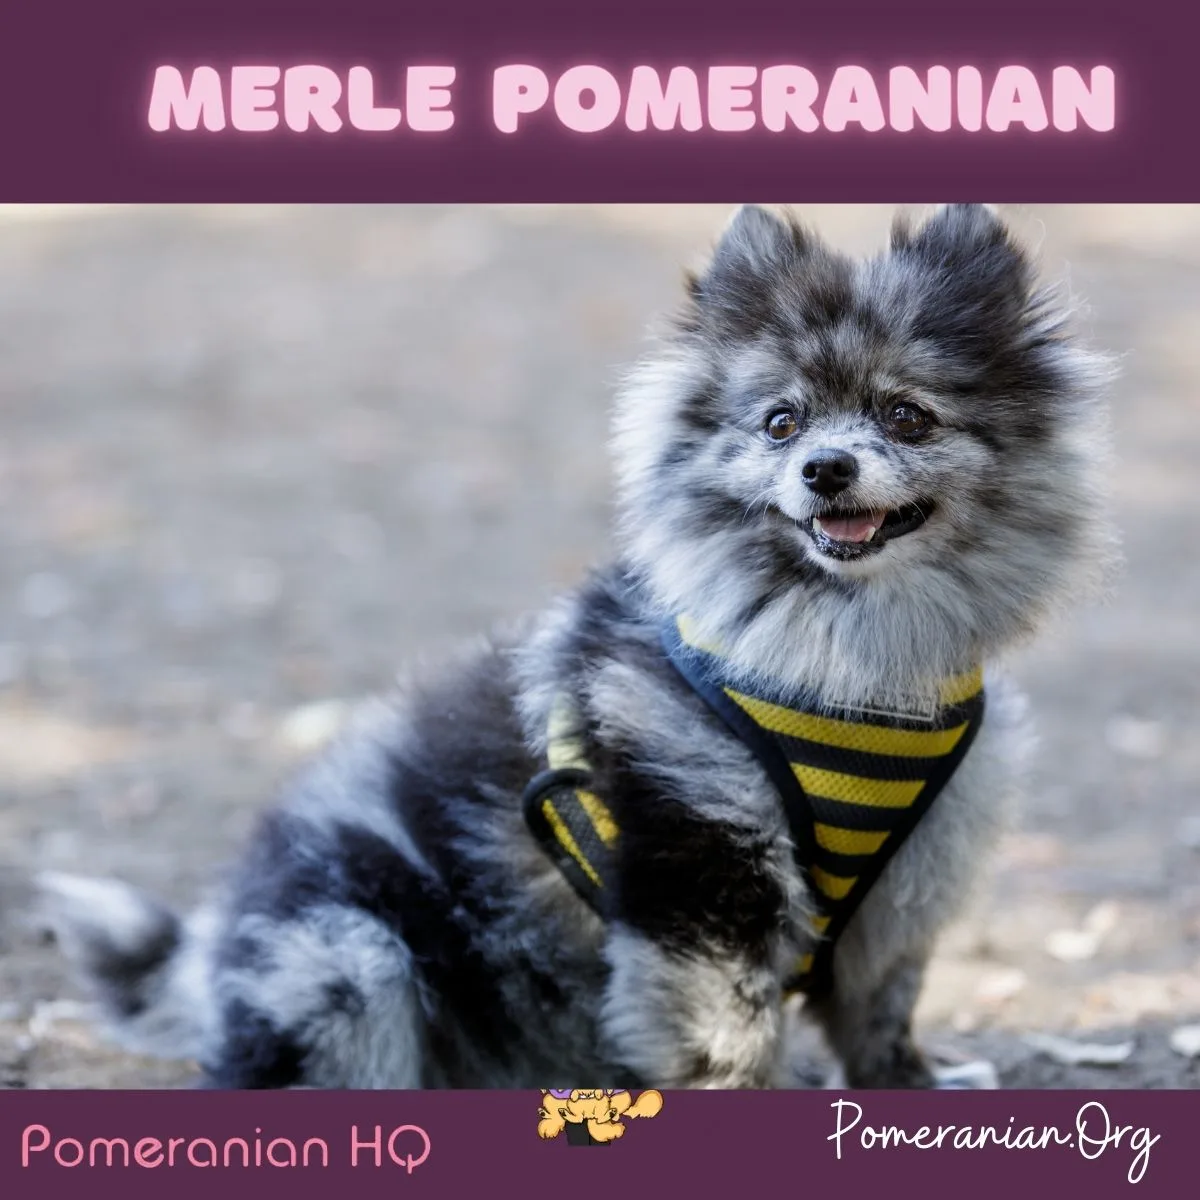 Merle Pomeranian Dog